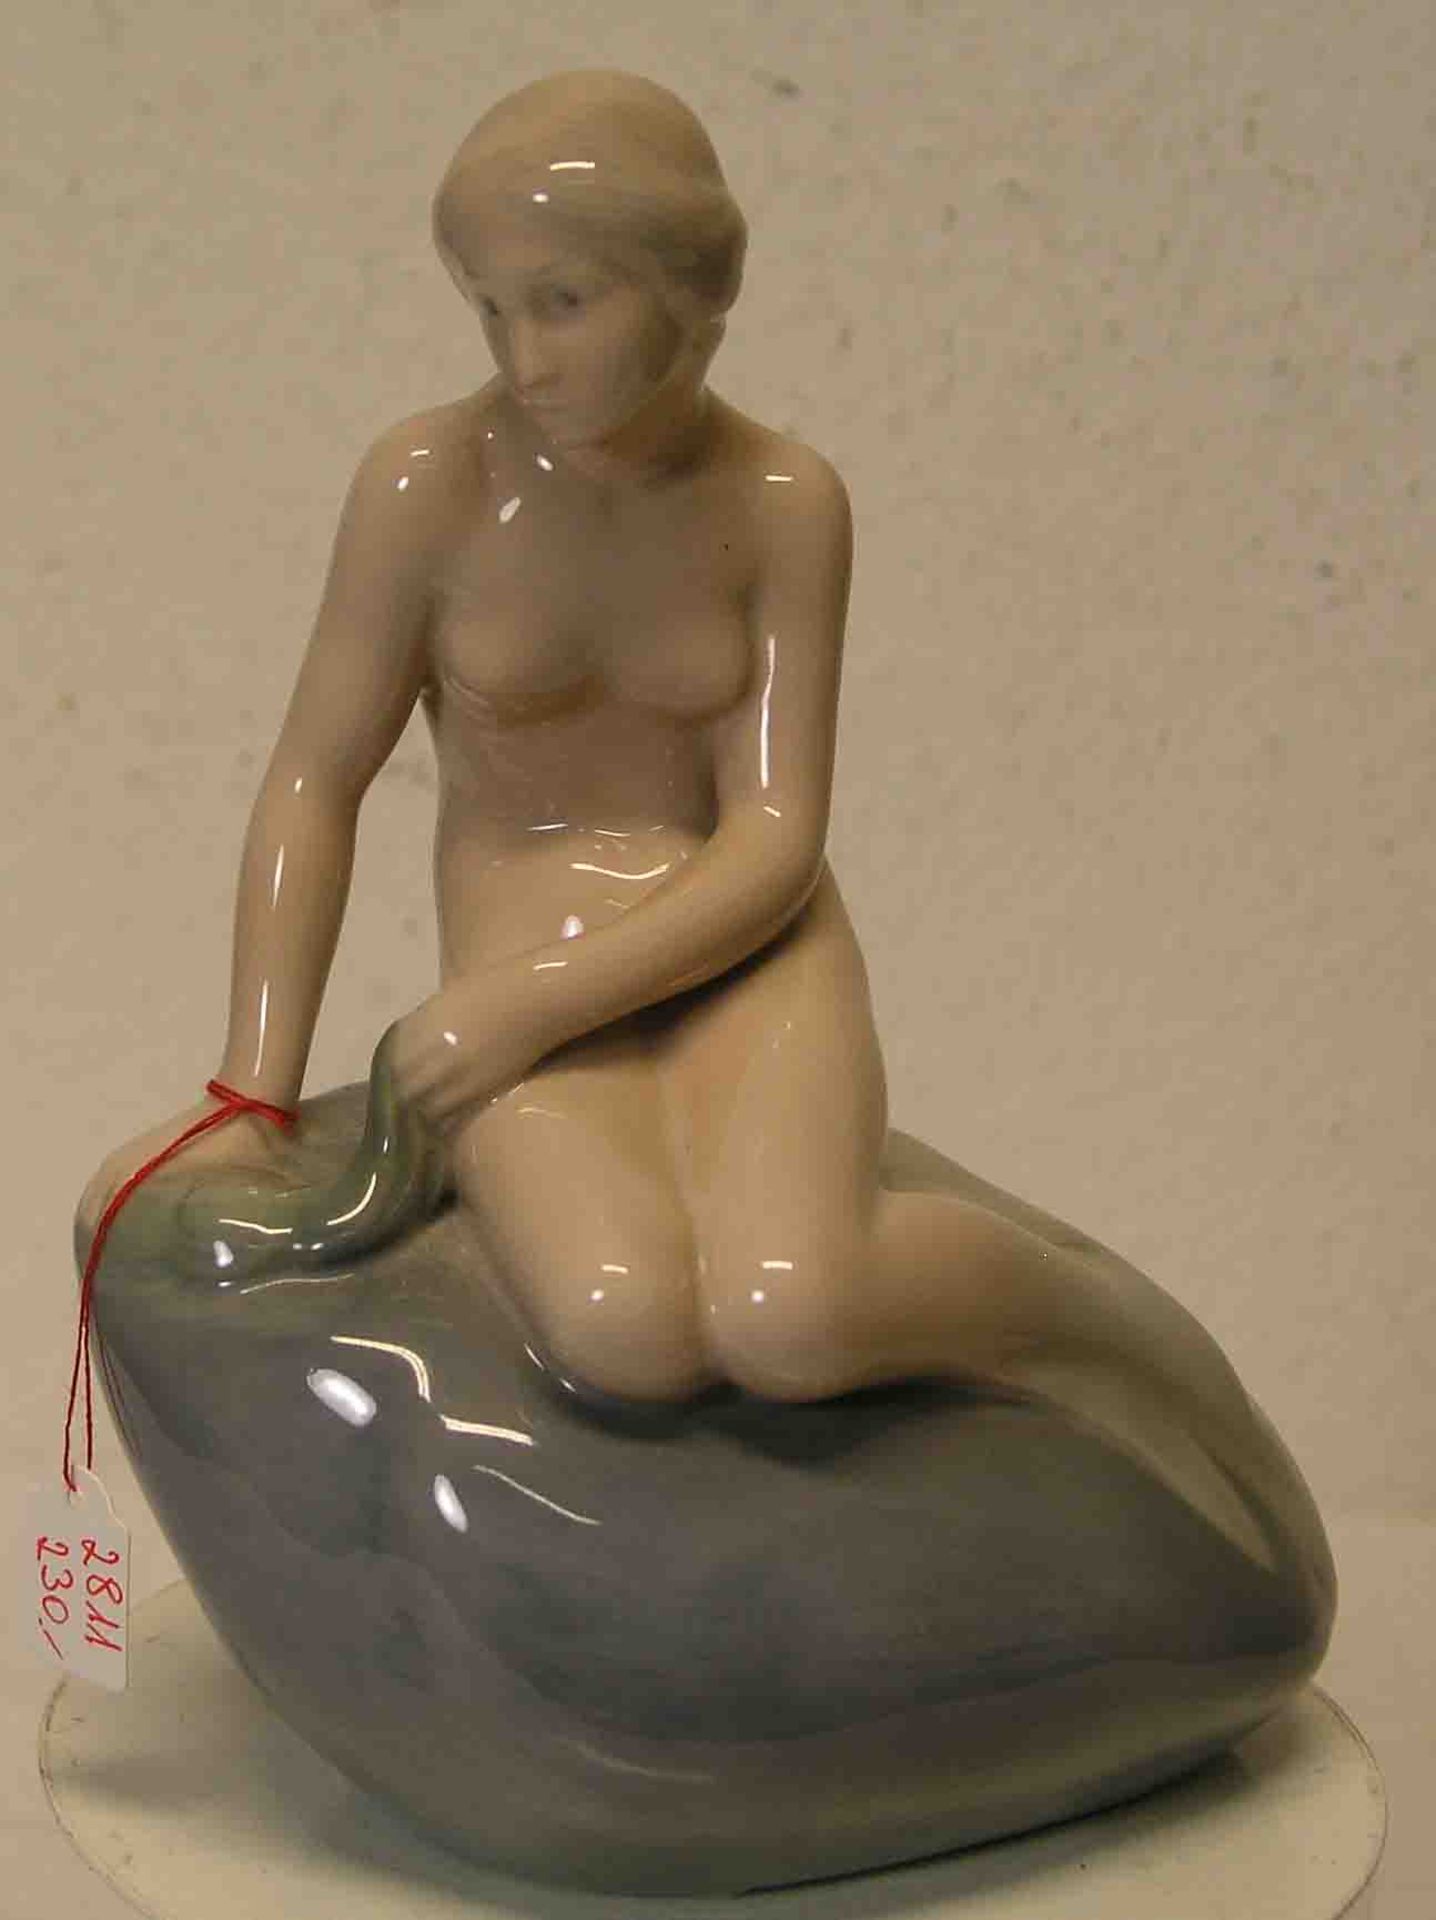 "Die kleine Meerjungfrau". Porzellan, Copenhagen, farbig staffiert, Höhe: 21cm.- - -20.17 % buyer'